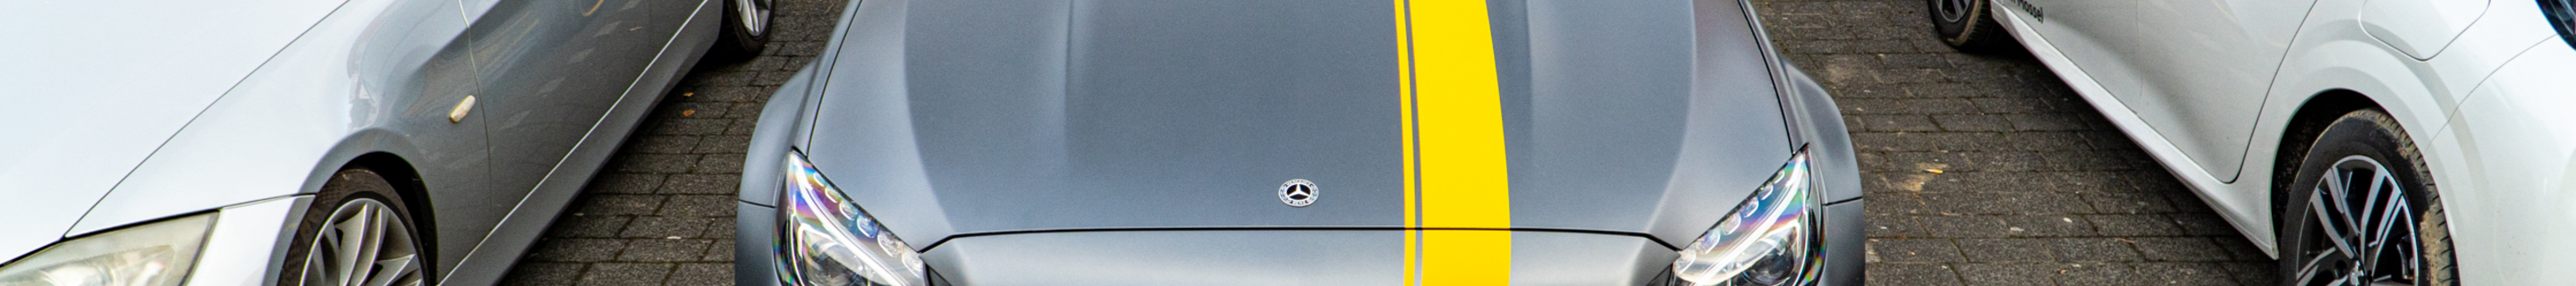 Mercedes-AMG C 63 S Coupé C205 Edition 1